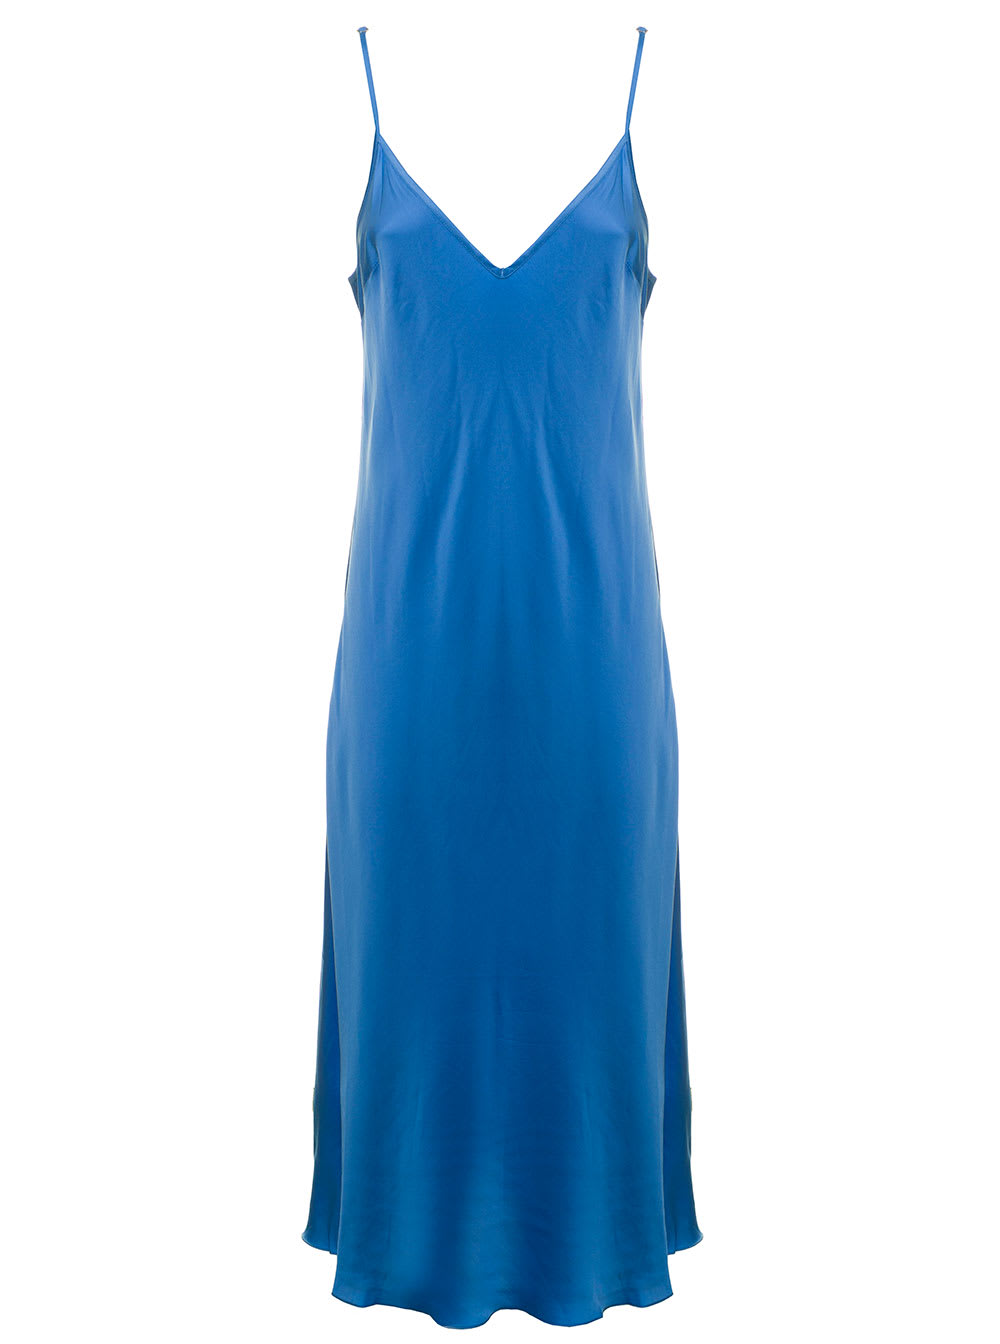 Rotate by Birger Christensen Rotate Womans Blue Satin Viscose Dress